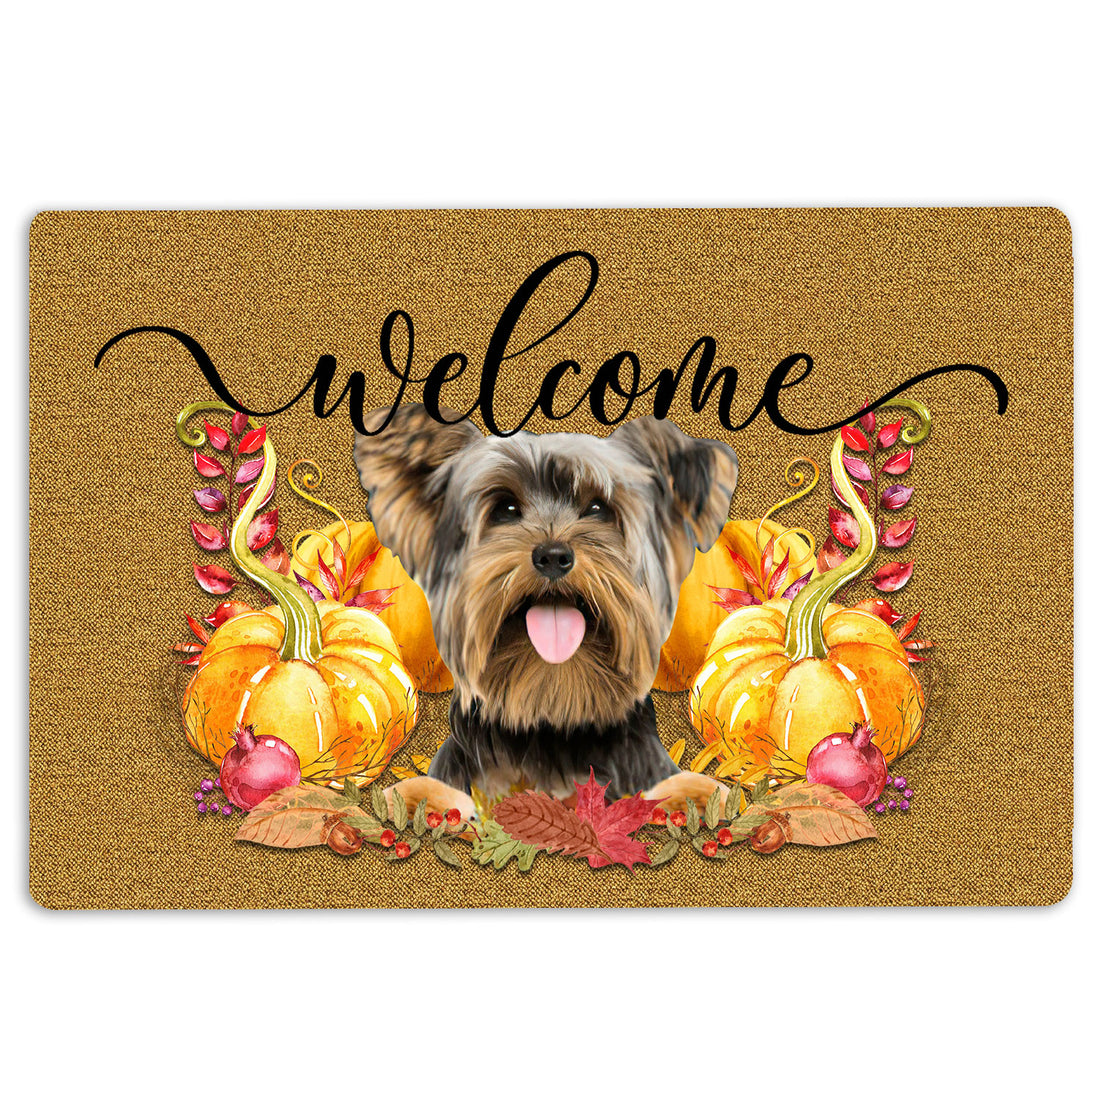 Ohaprints-Doormat-Outdoor-Indoor-Pumpkin-Spice-Yorkshire-Terrier-Welcome-Fall-Autumn-Rubber-Door-Mat-191-18'' x 30''